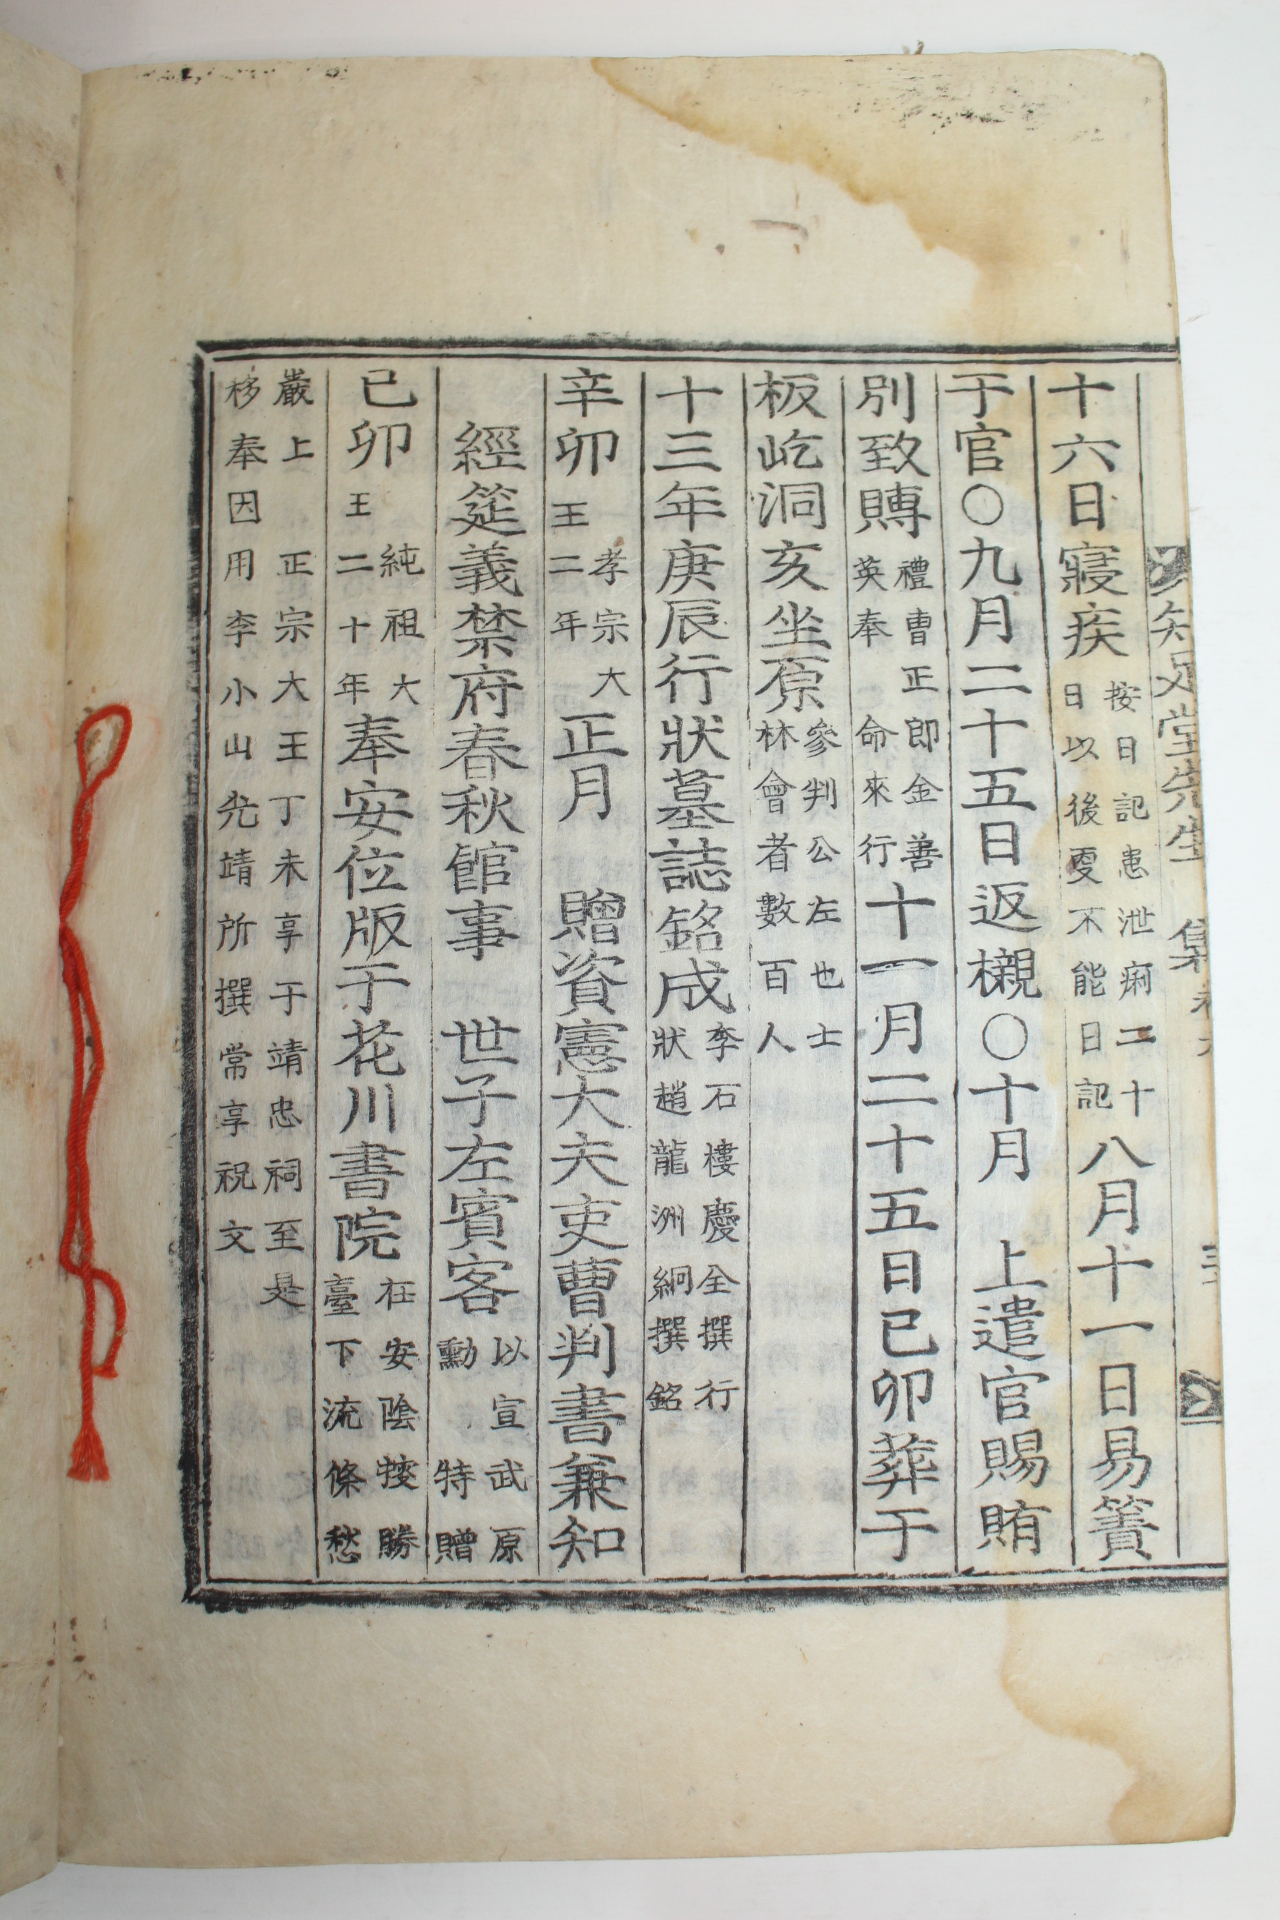 1915년 목활자본 박명부(朴明頤) 지족당선생문집(知足堂先生文集)년보편 1책